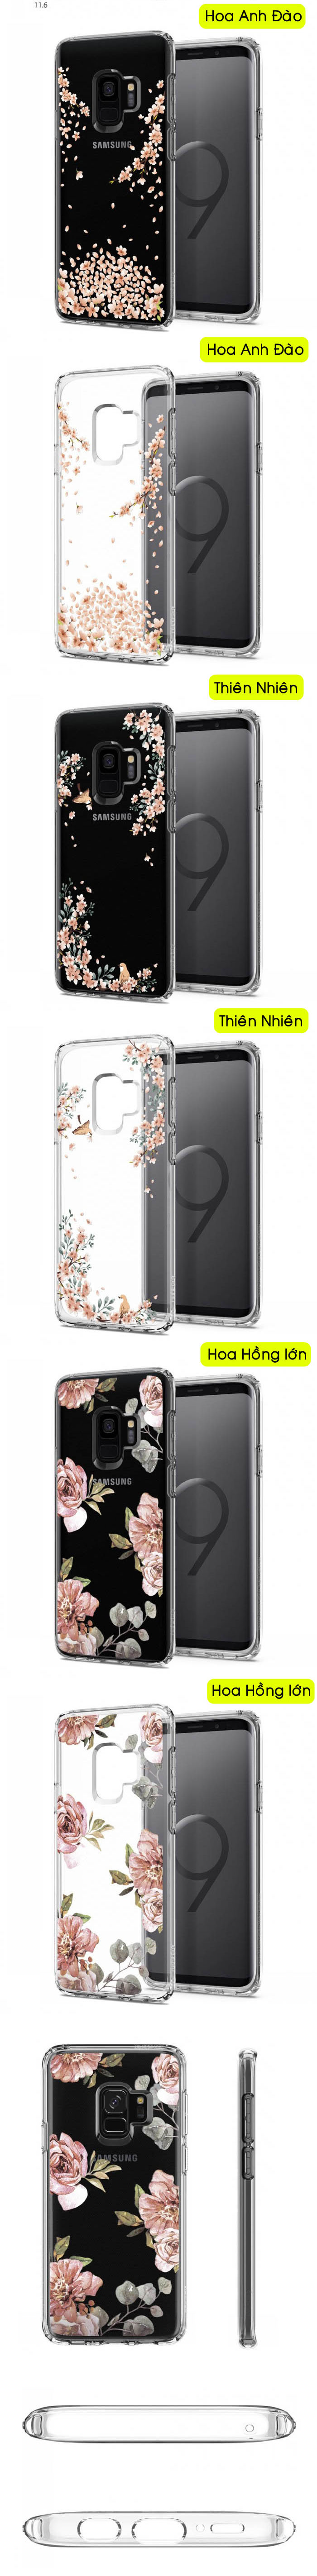 Ốp lưng Galaxy S9 Spigen Liquid Crytal Blossom 6